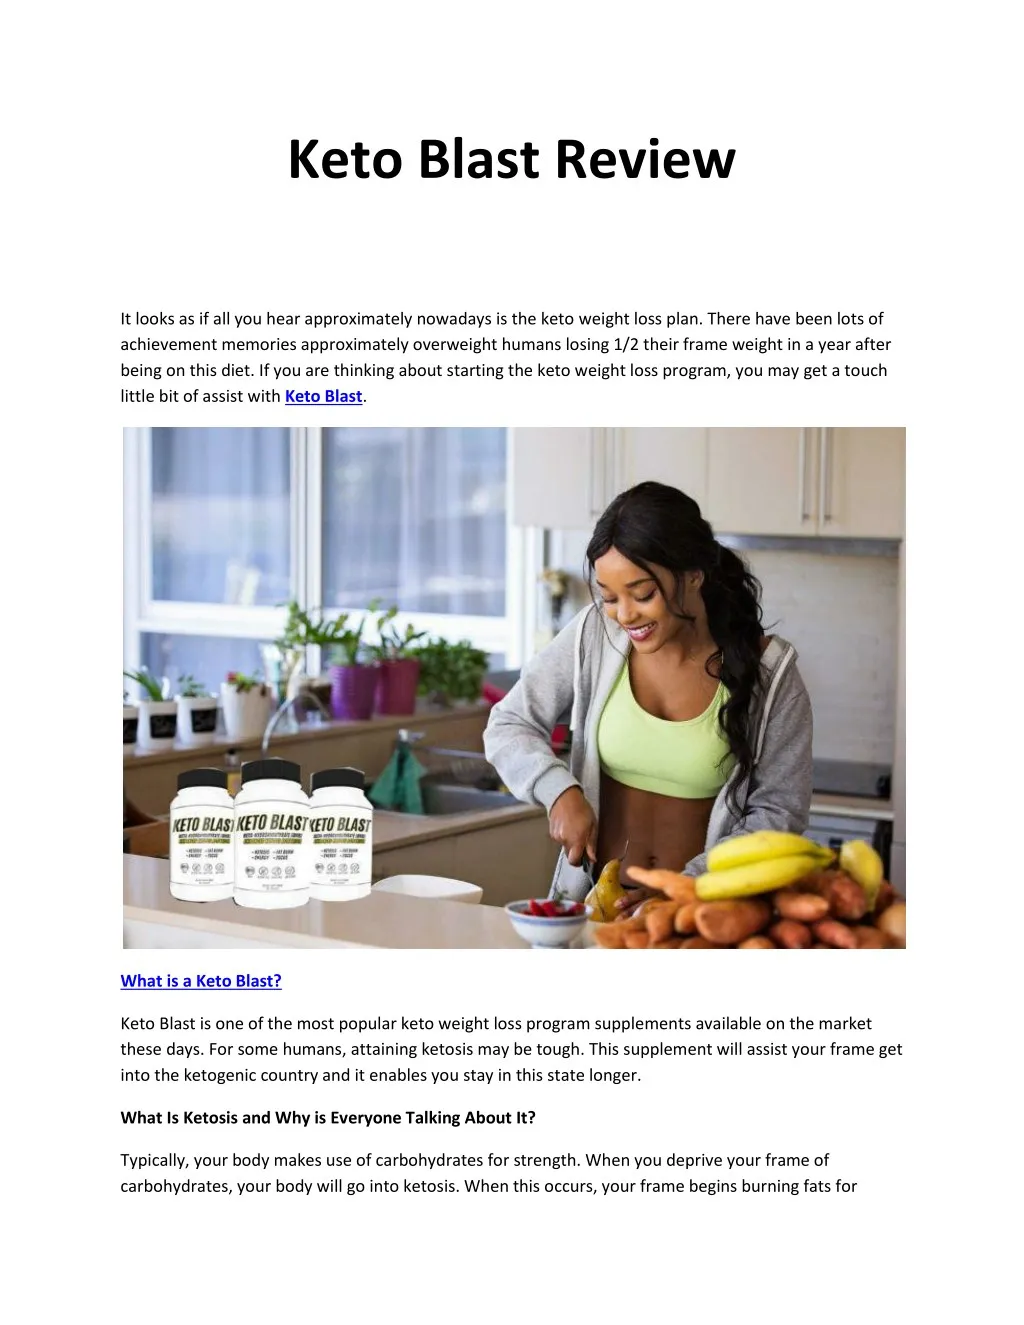 keto blast review